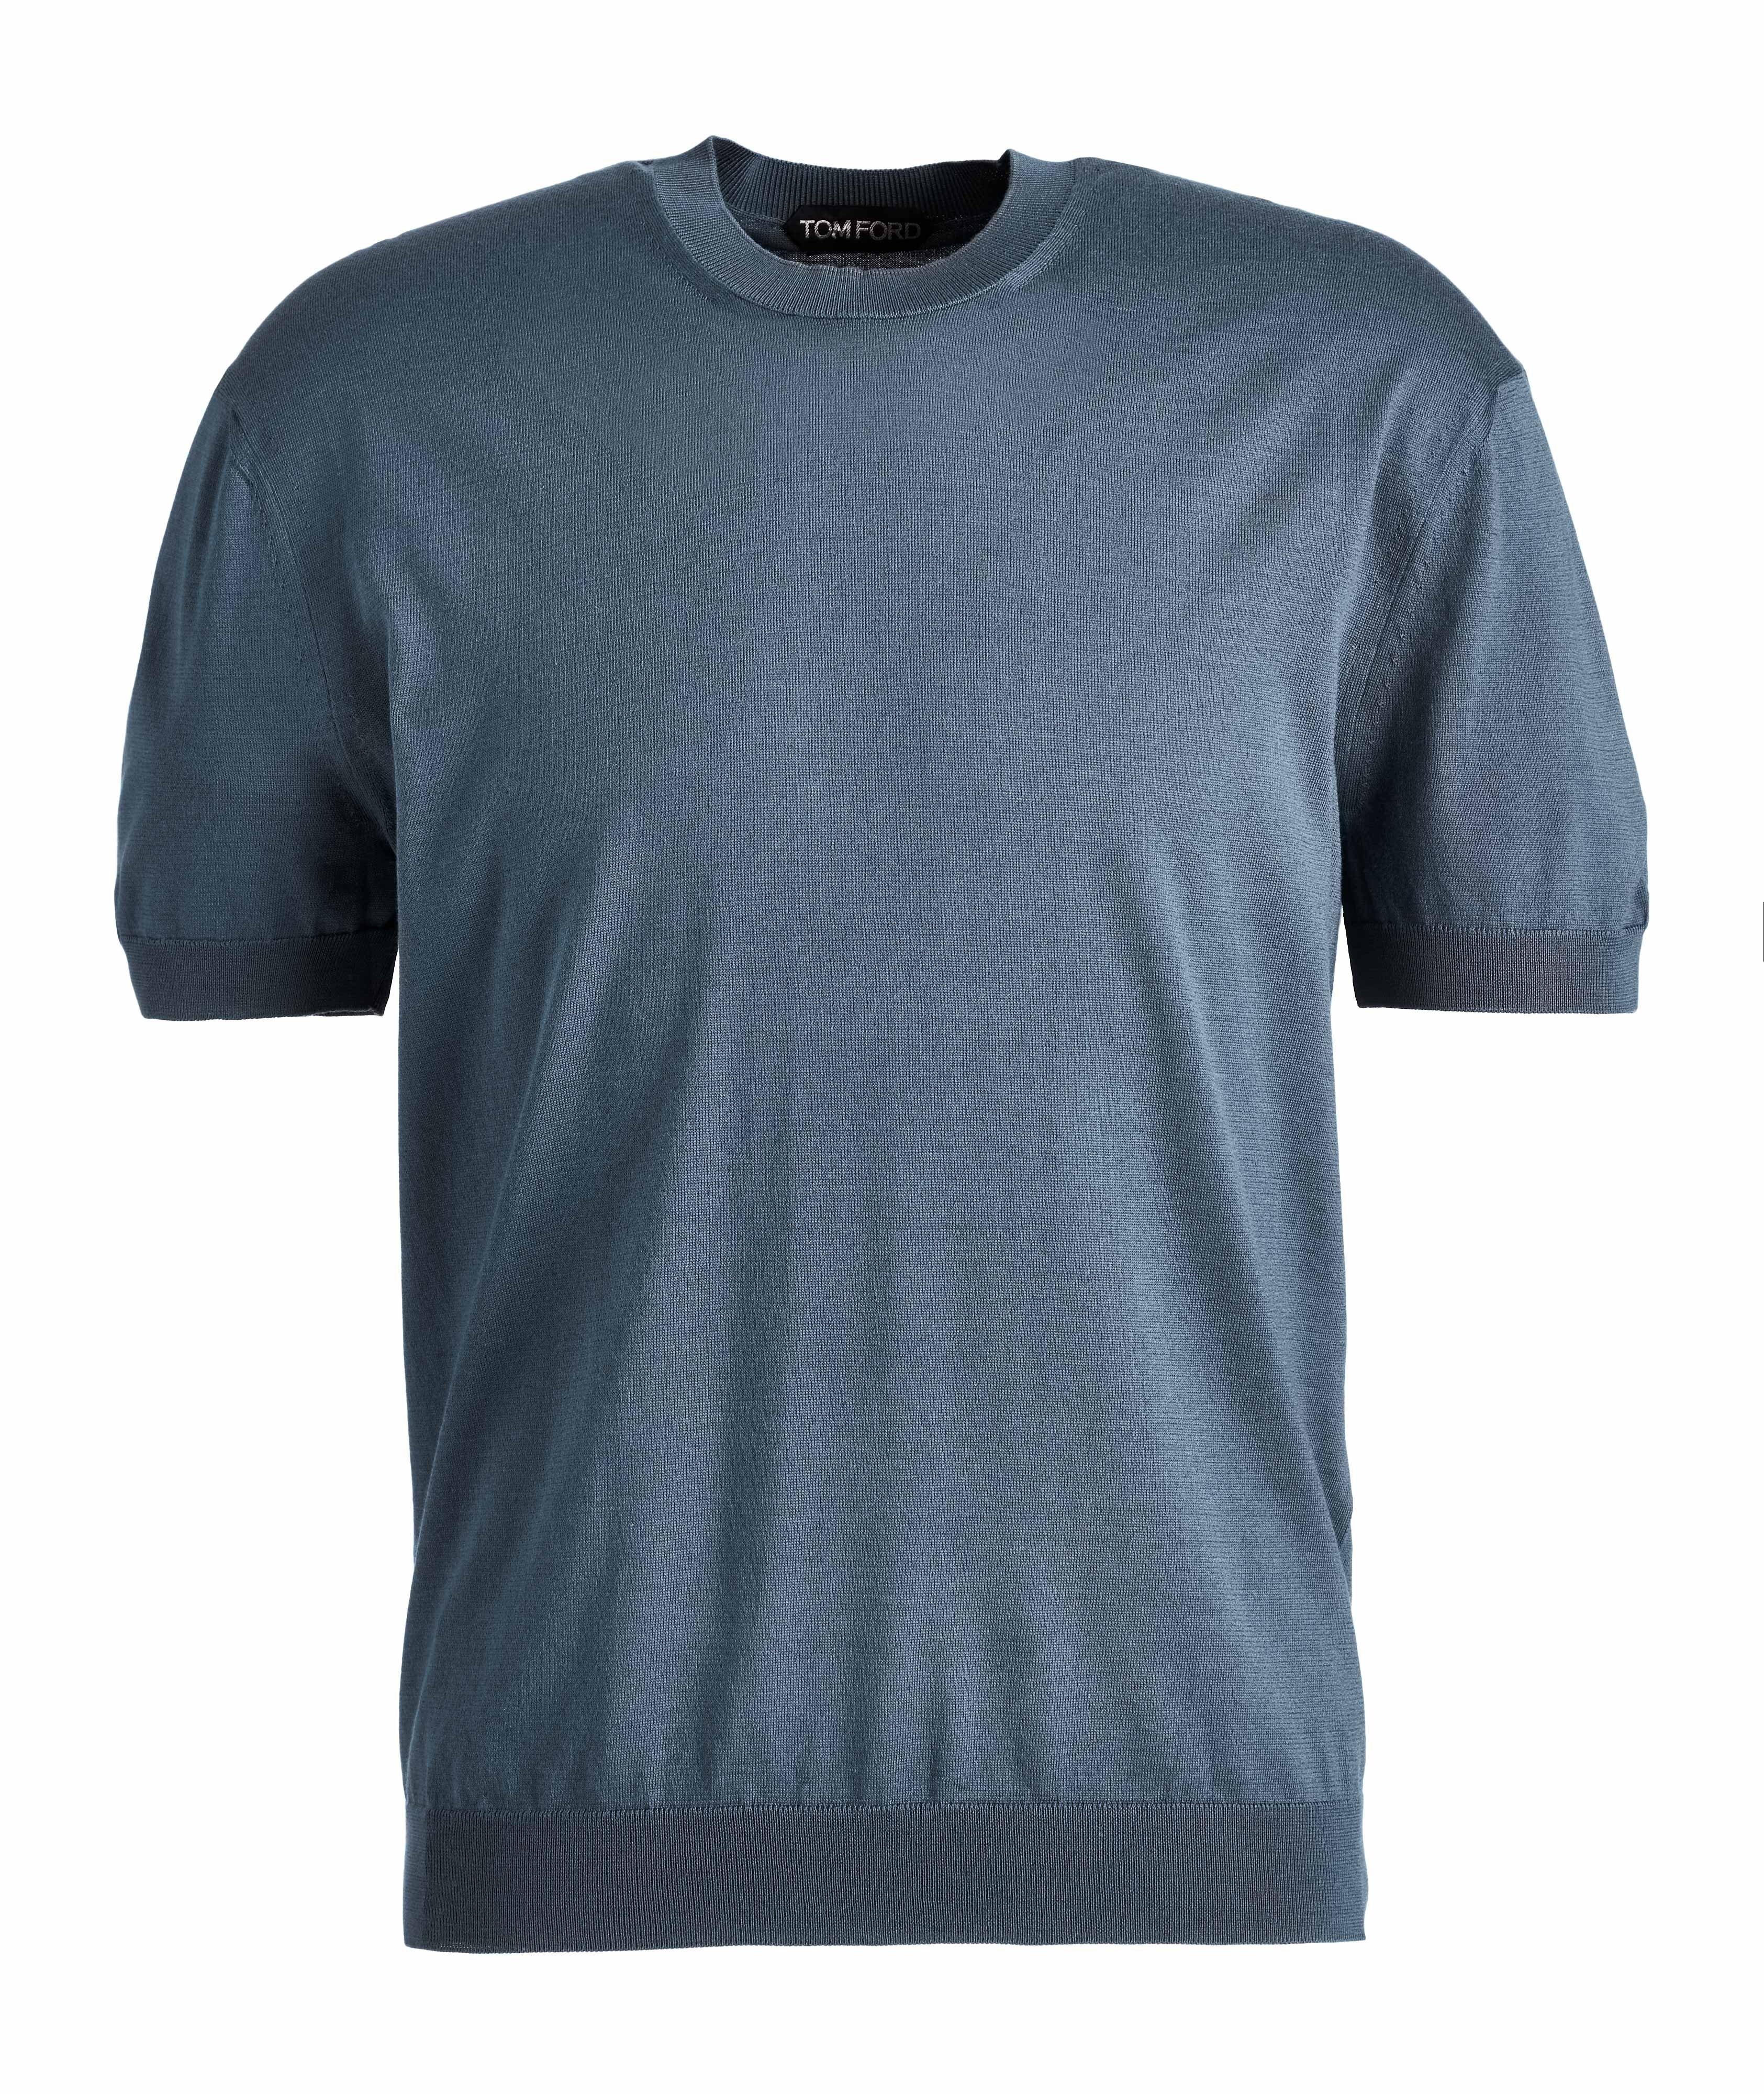 T-shirt en tricot image 0